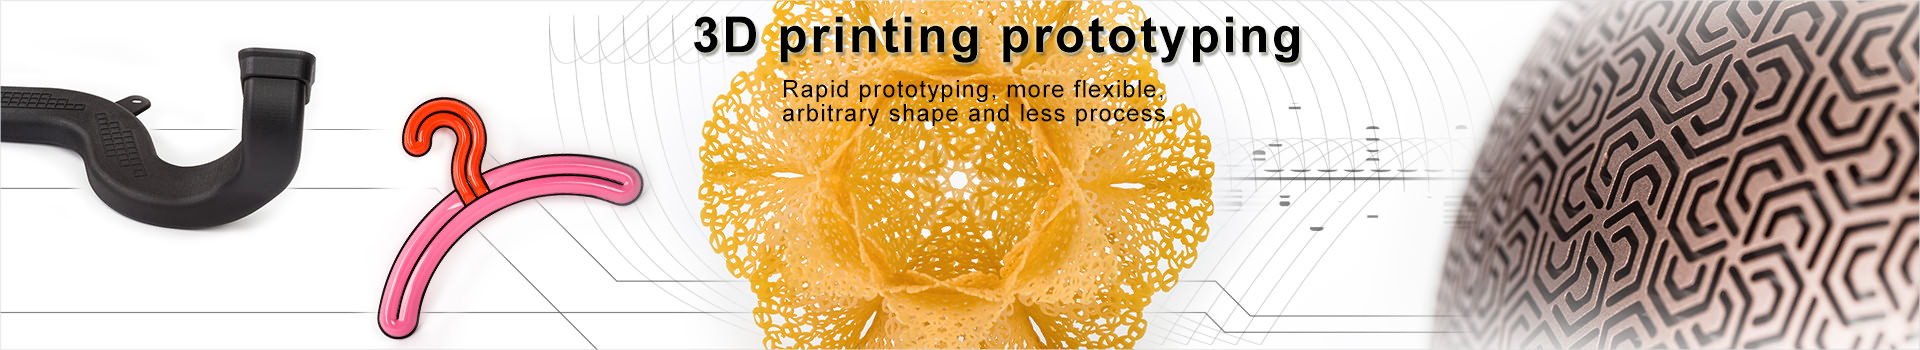 3D printing|3D printing prototyping|3D printing service||SLS service|SLM service|3D printing rapid prototyping|3D printing prototype